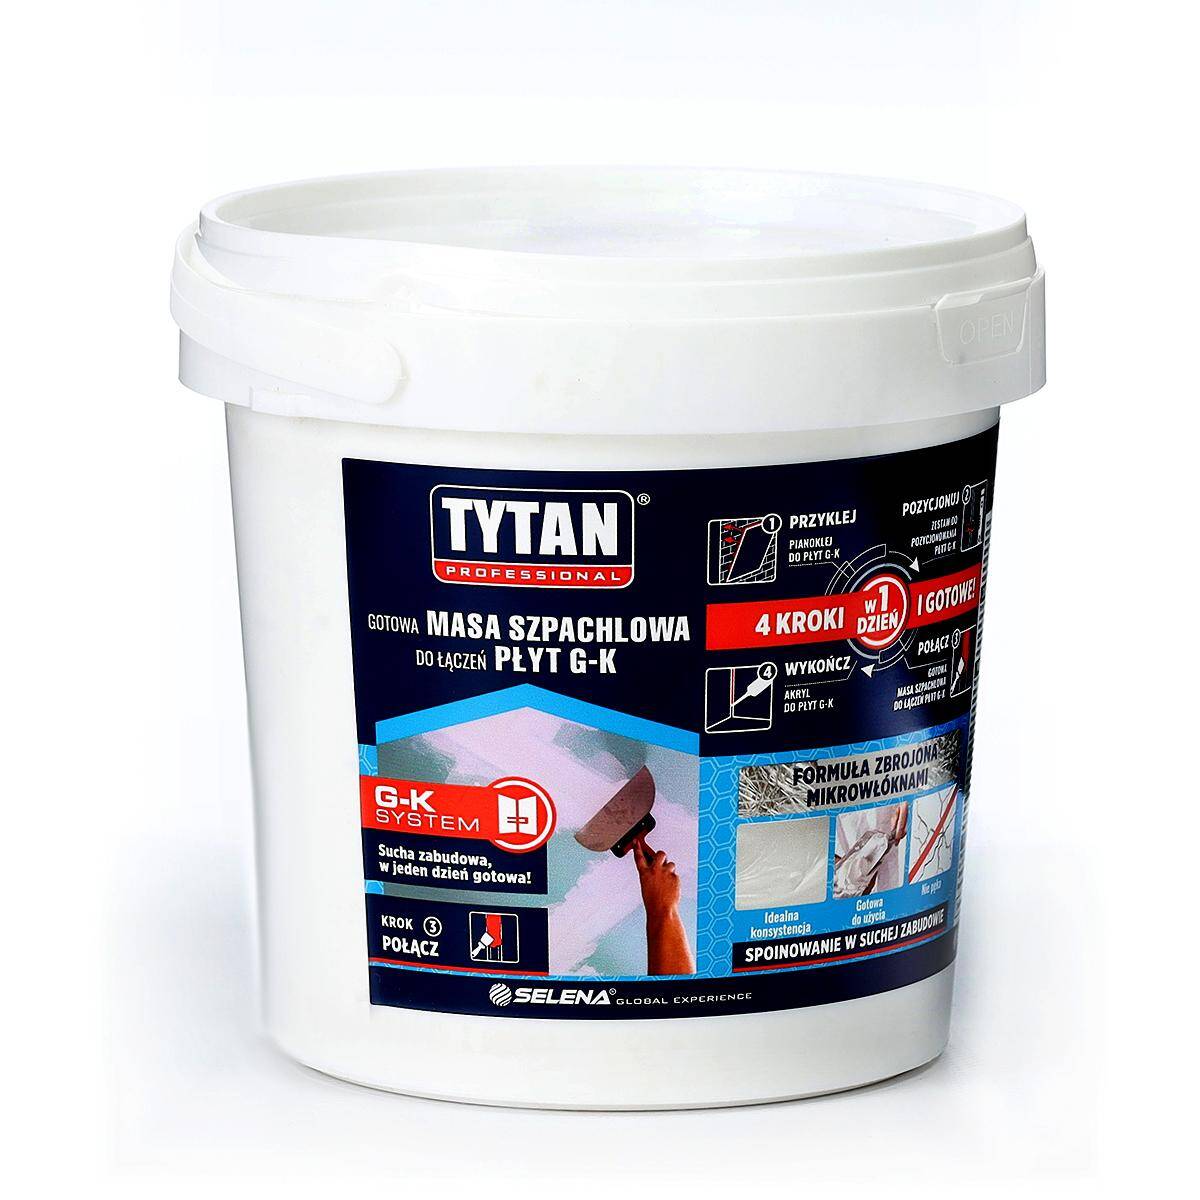 Gotowa masa szpachlowa do łączeń płyt GK 1,8 kg biała TYTAN Professional